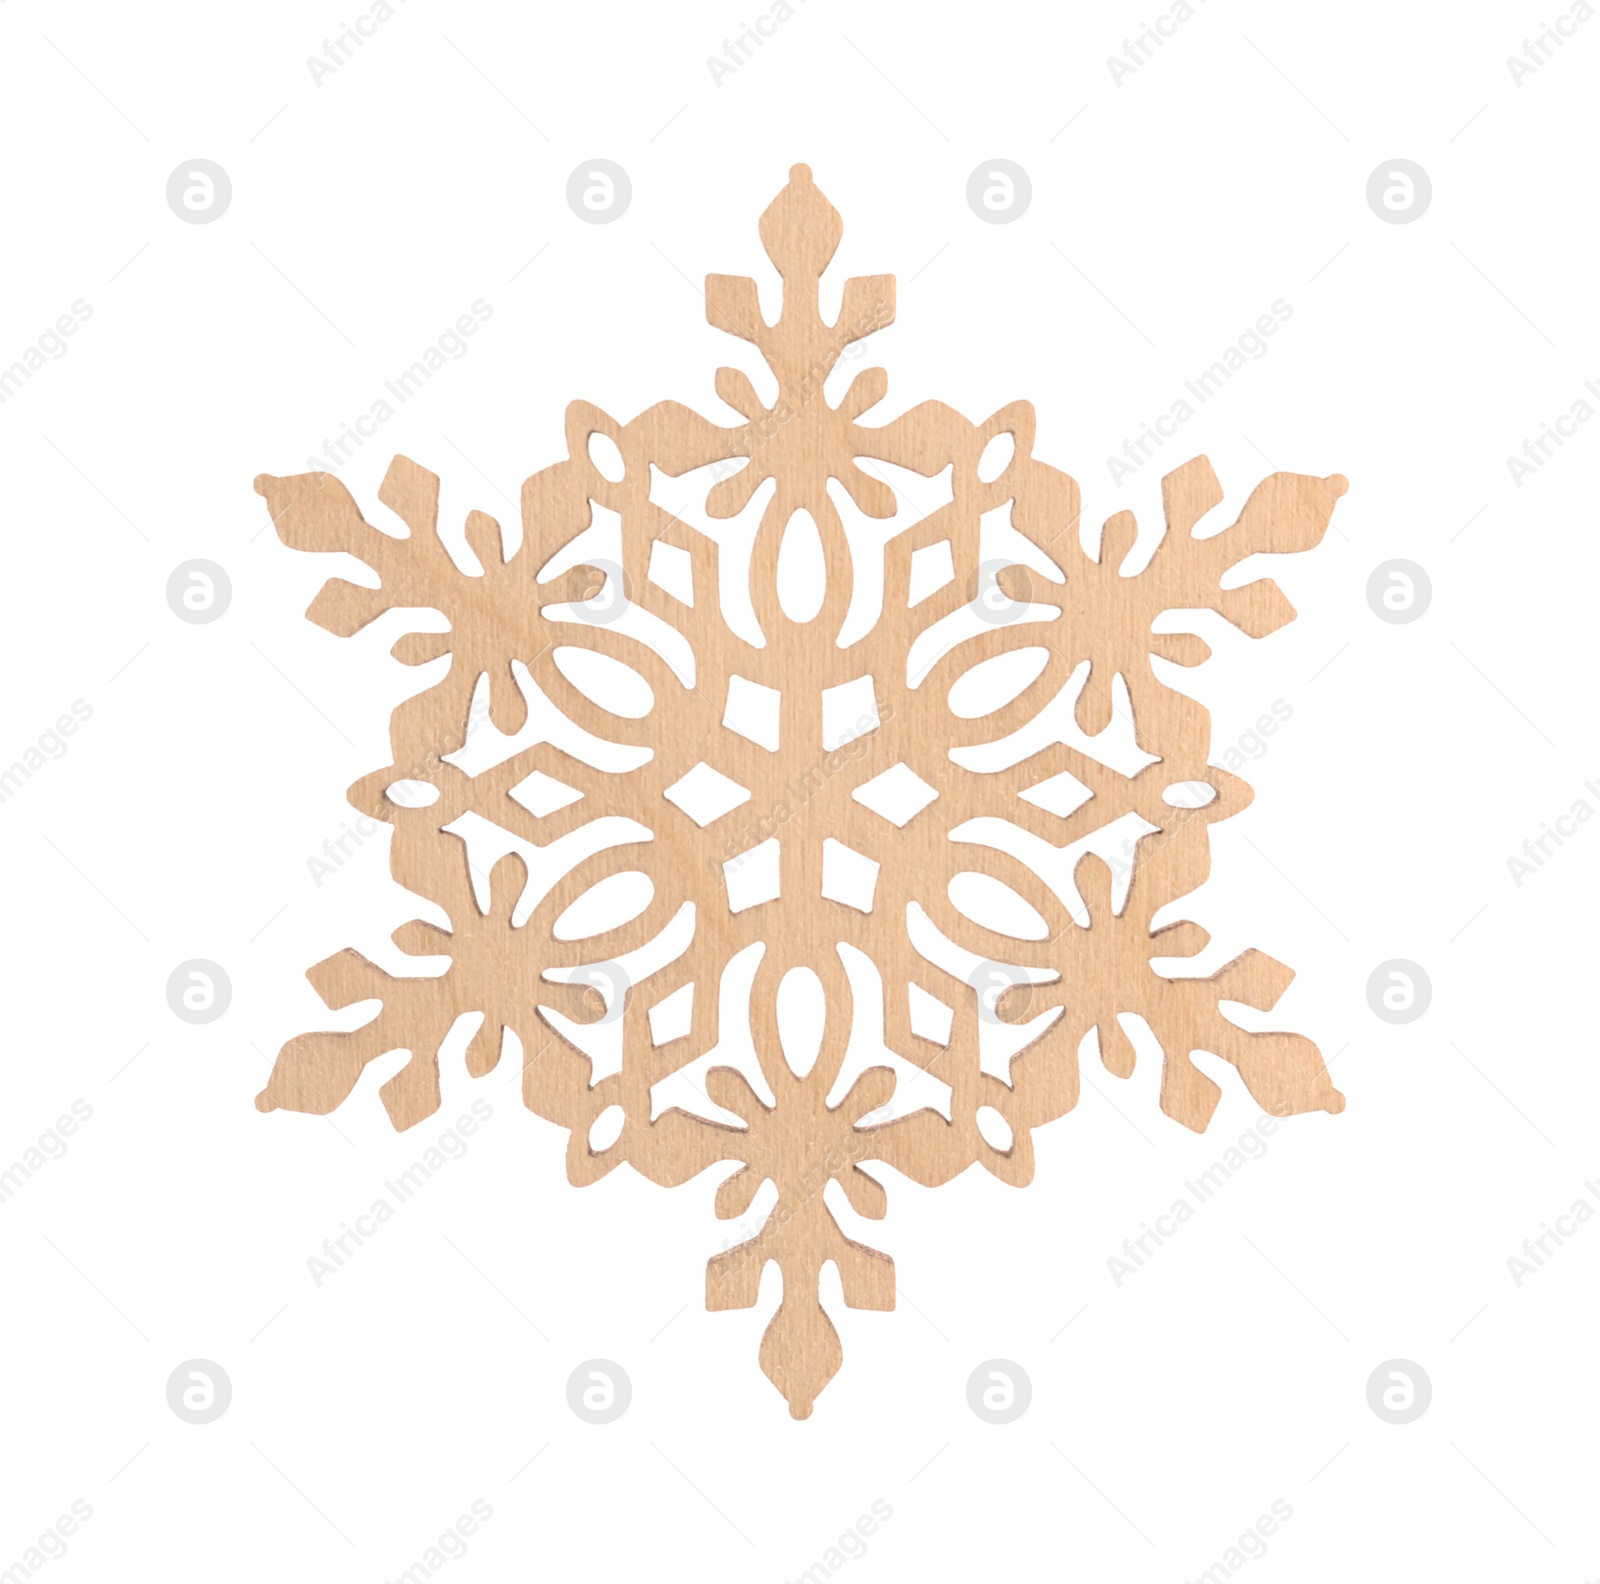 Photo of Beautiful decorative snowflake isolated on white. Christmas decoration